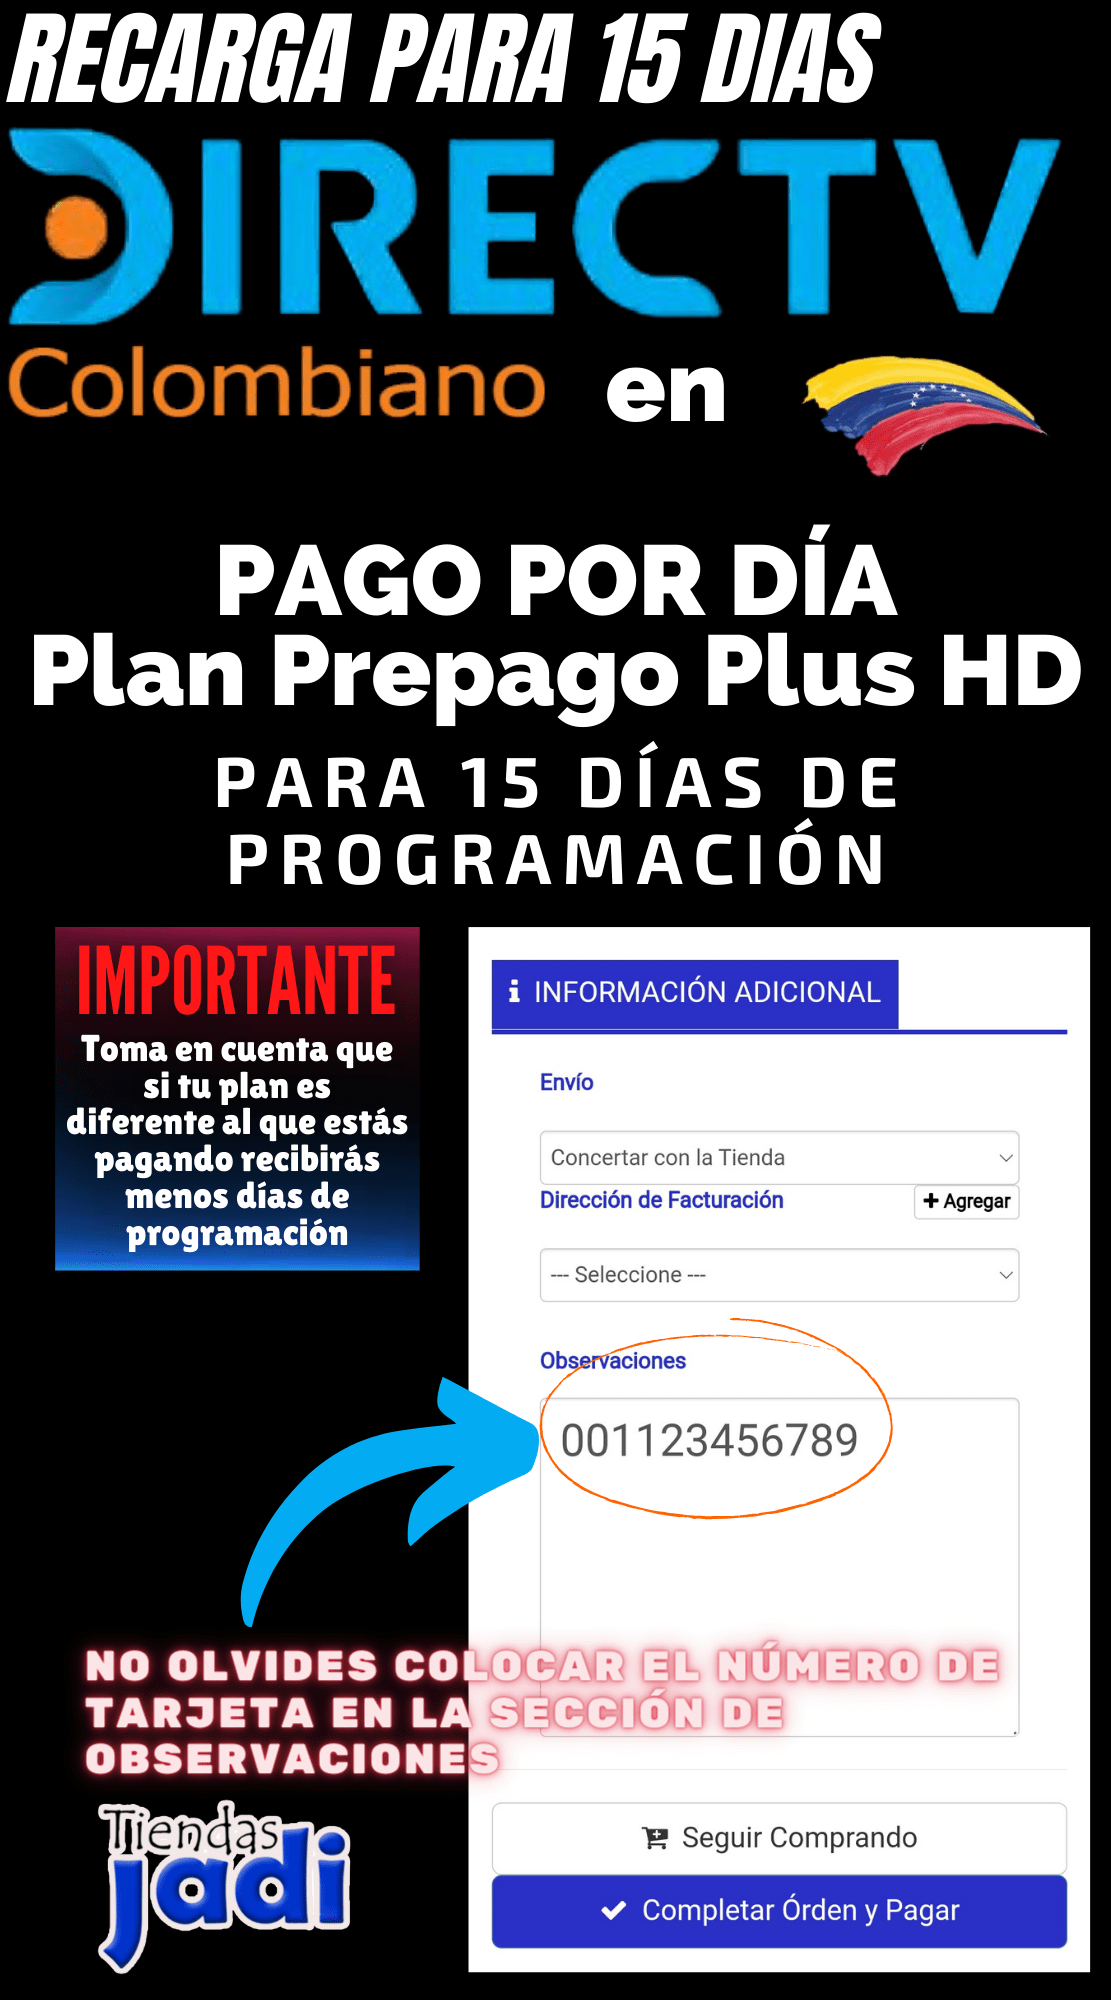 Recarga de Plan Basico Directv Colombiano 45.000 Pesos para 15 dias de programación